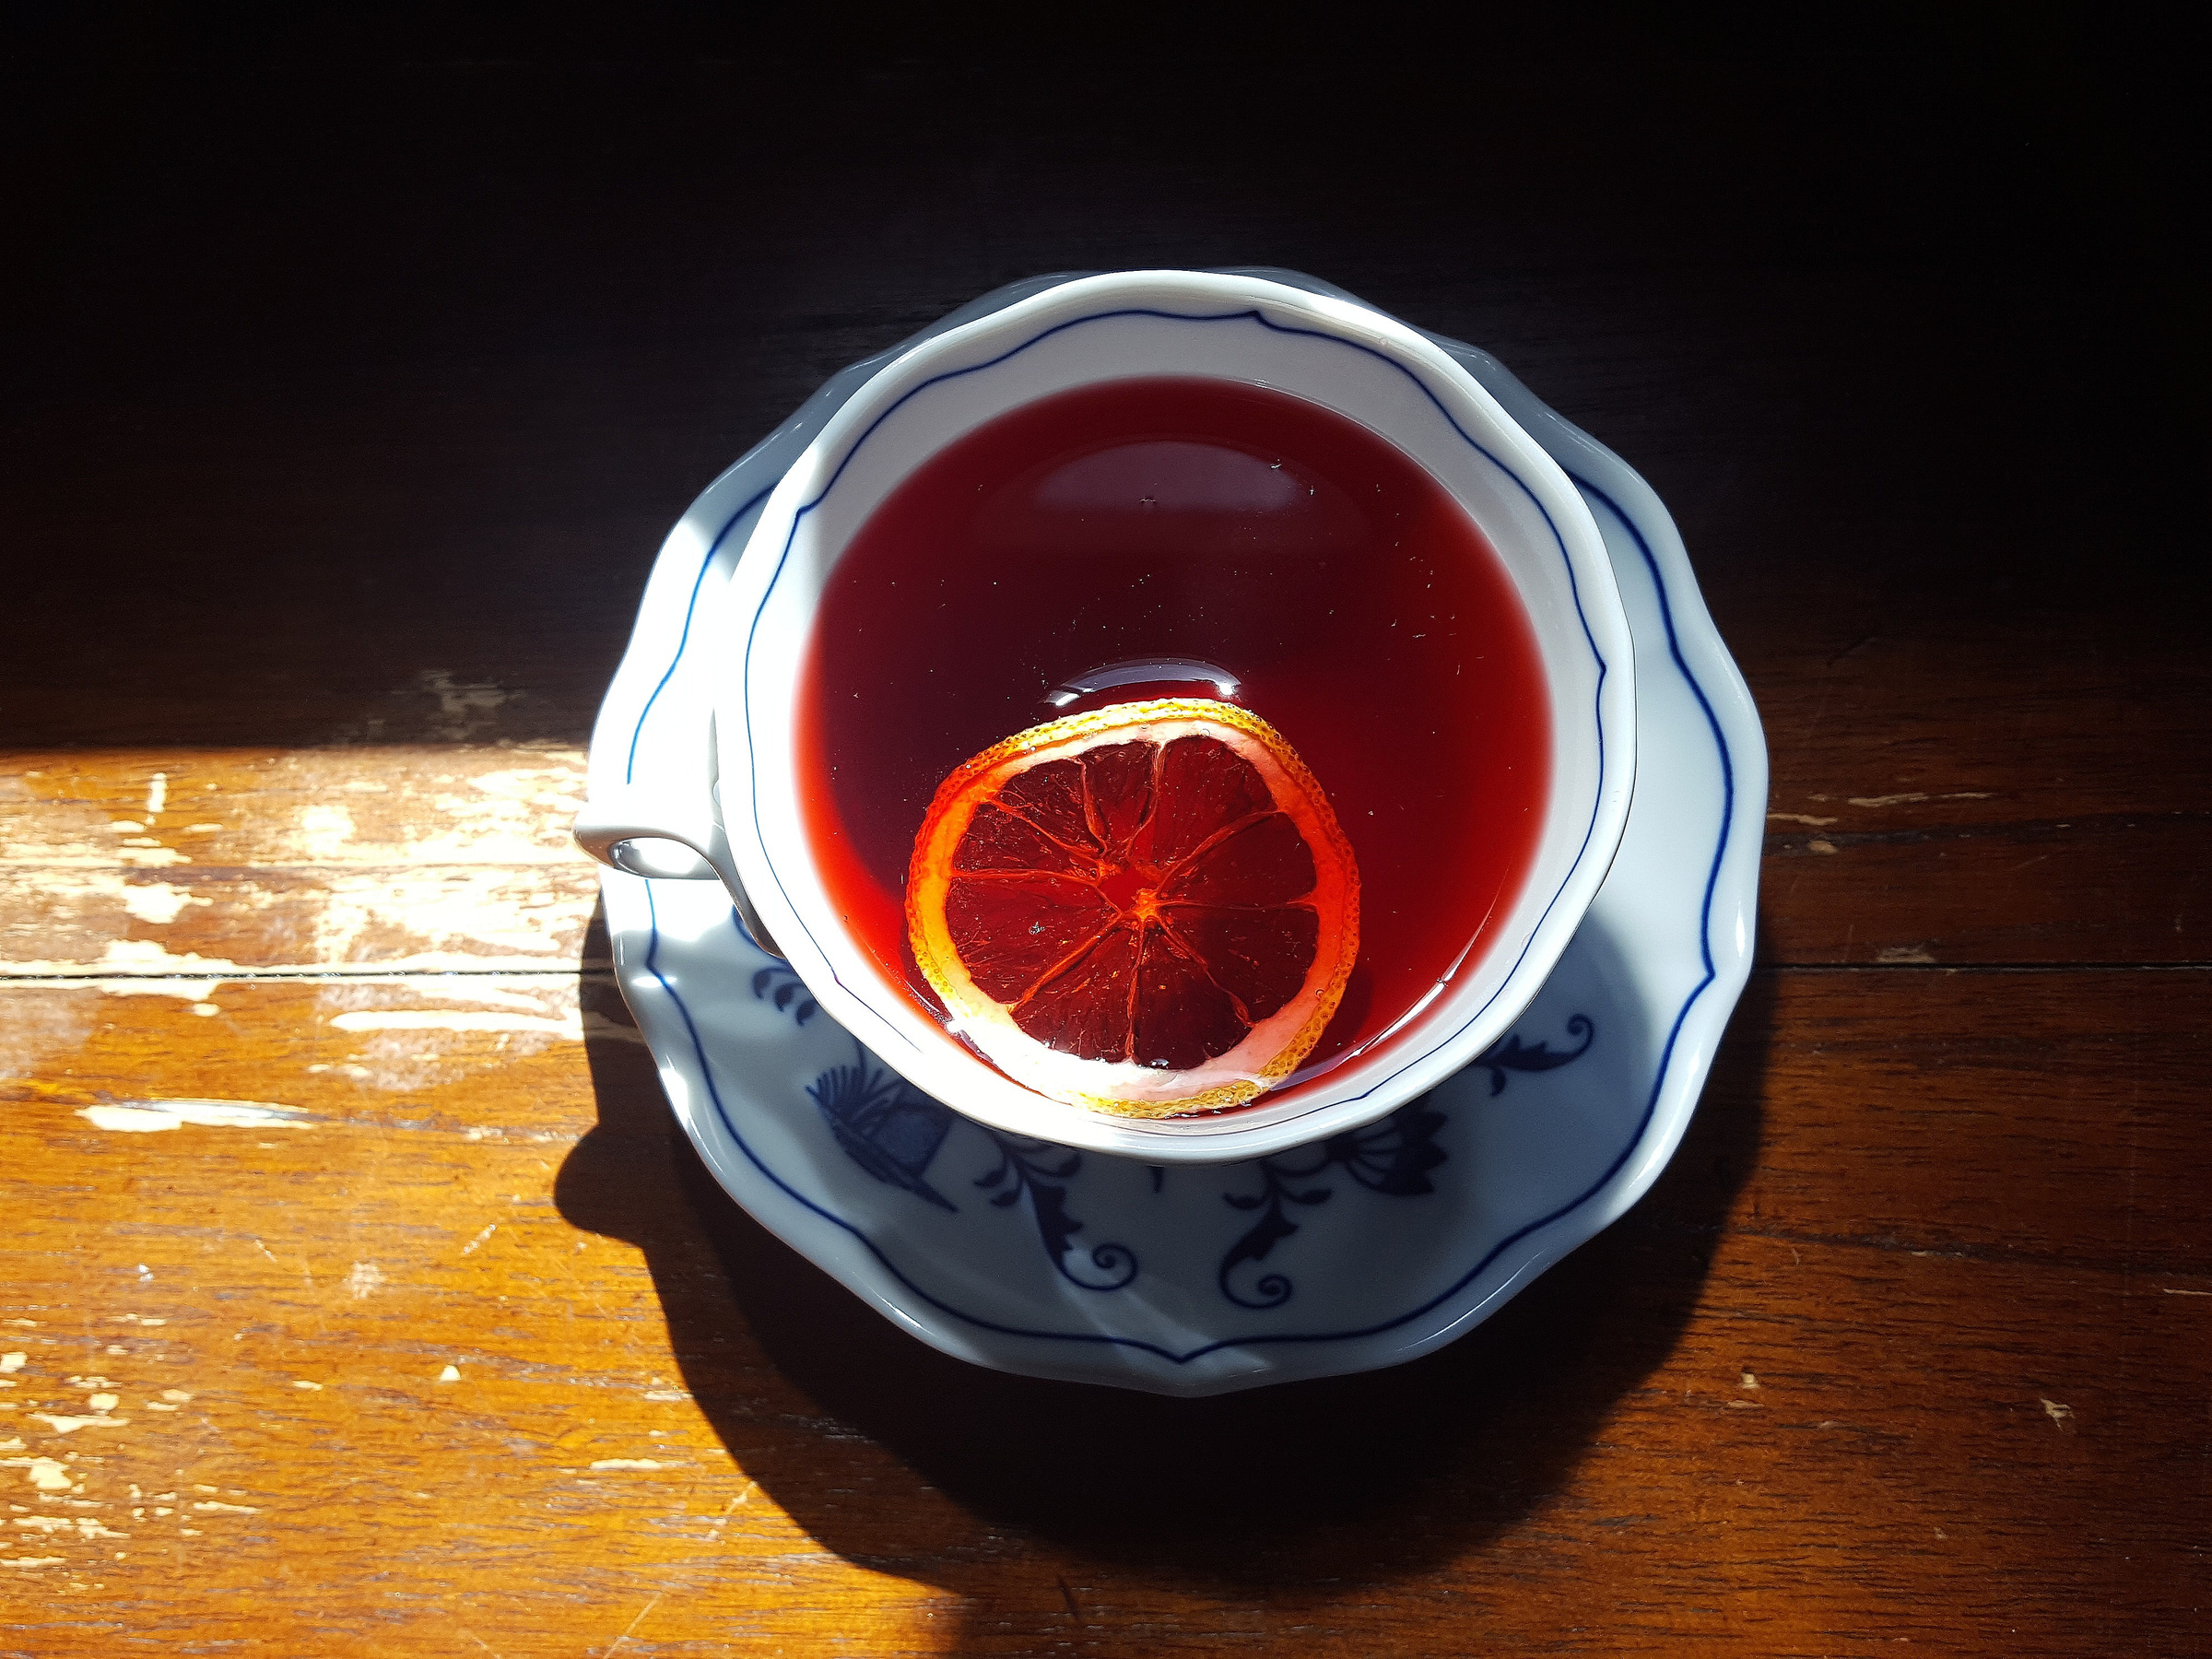 Как выбор чая может отражать характер человека. Фото © Unsplash / Tea Creative │ Soo Chung